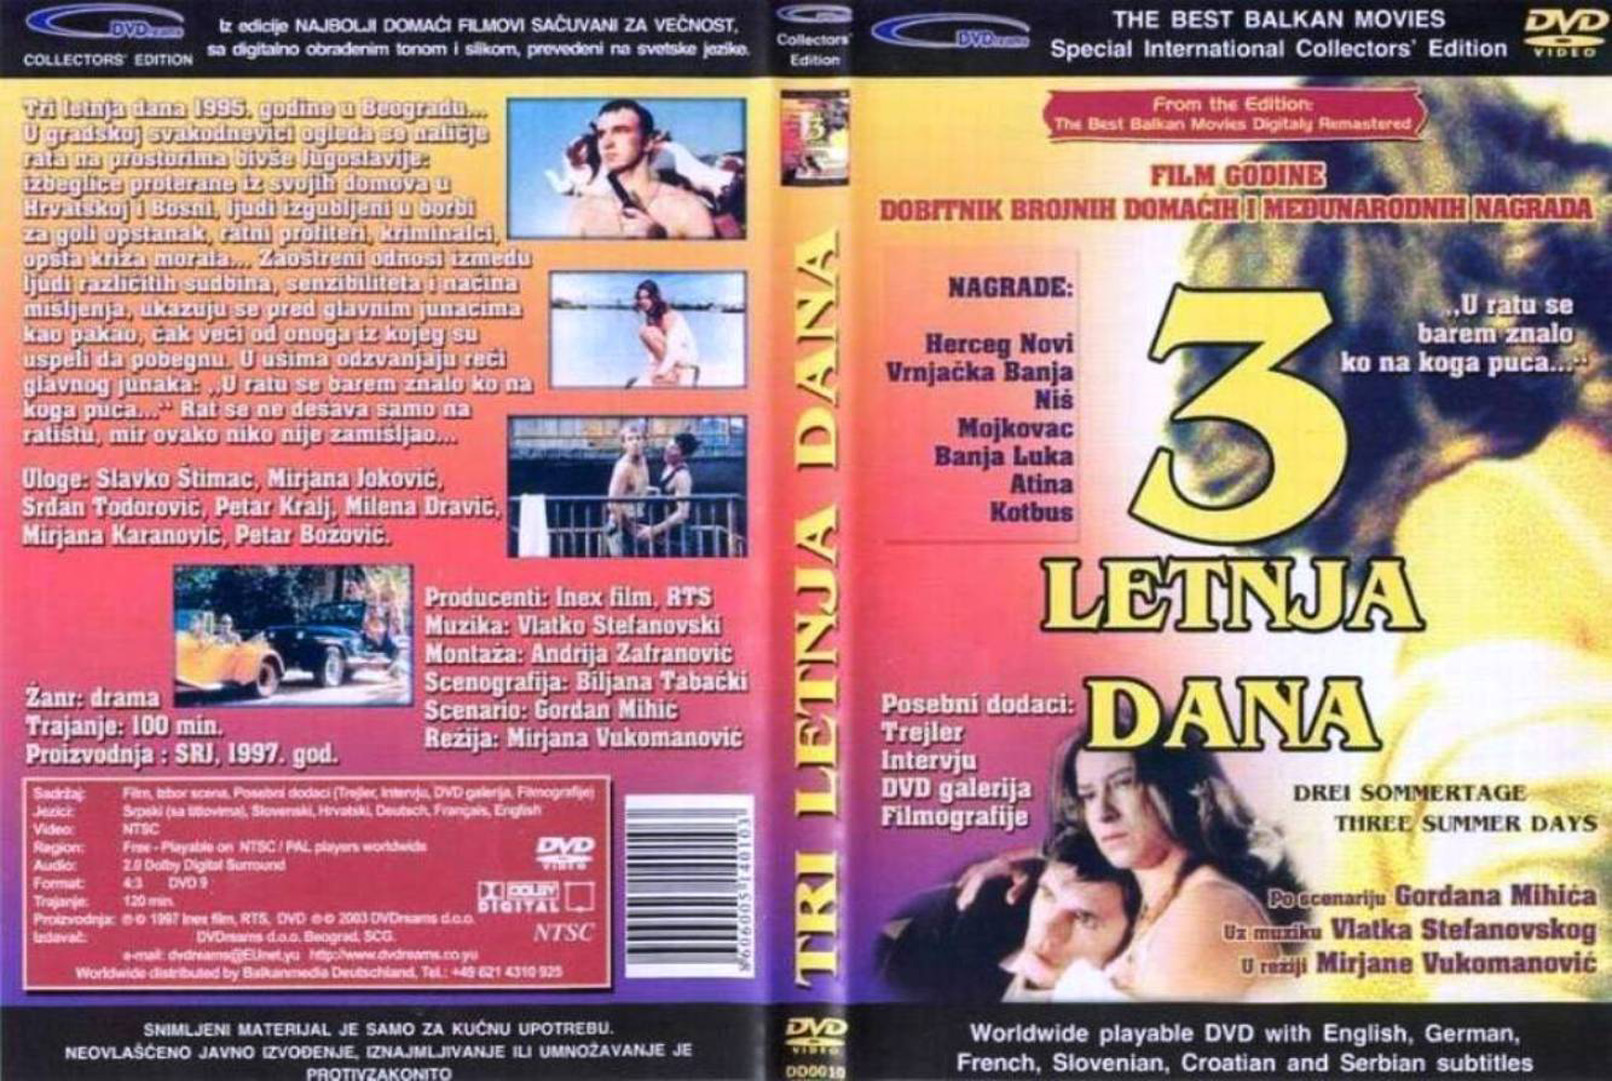 Click to view full size image -  DVD Cover - 0-9 - 3_letnja_dana_dvd - 3_letnja_dana_dvd.jpg